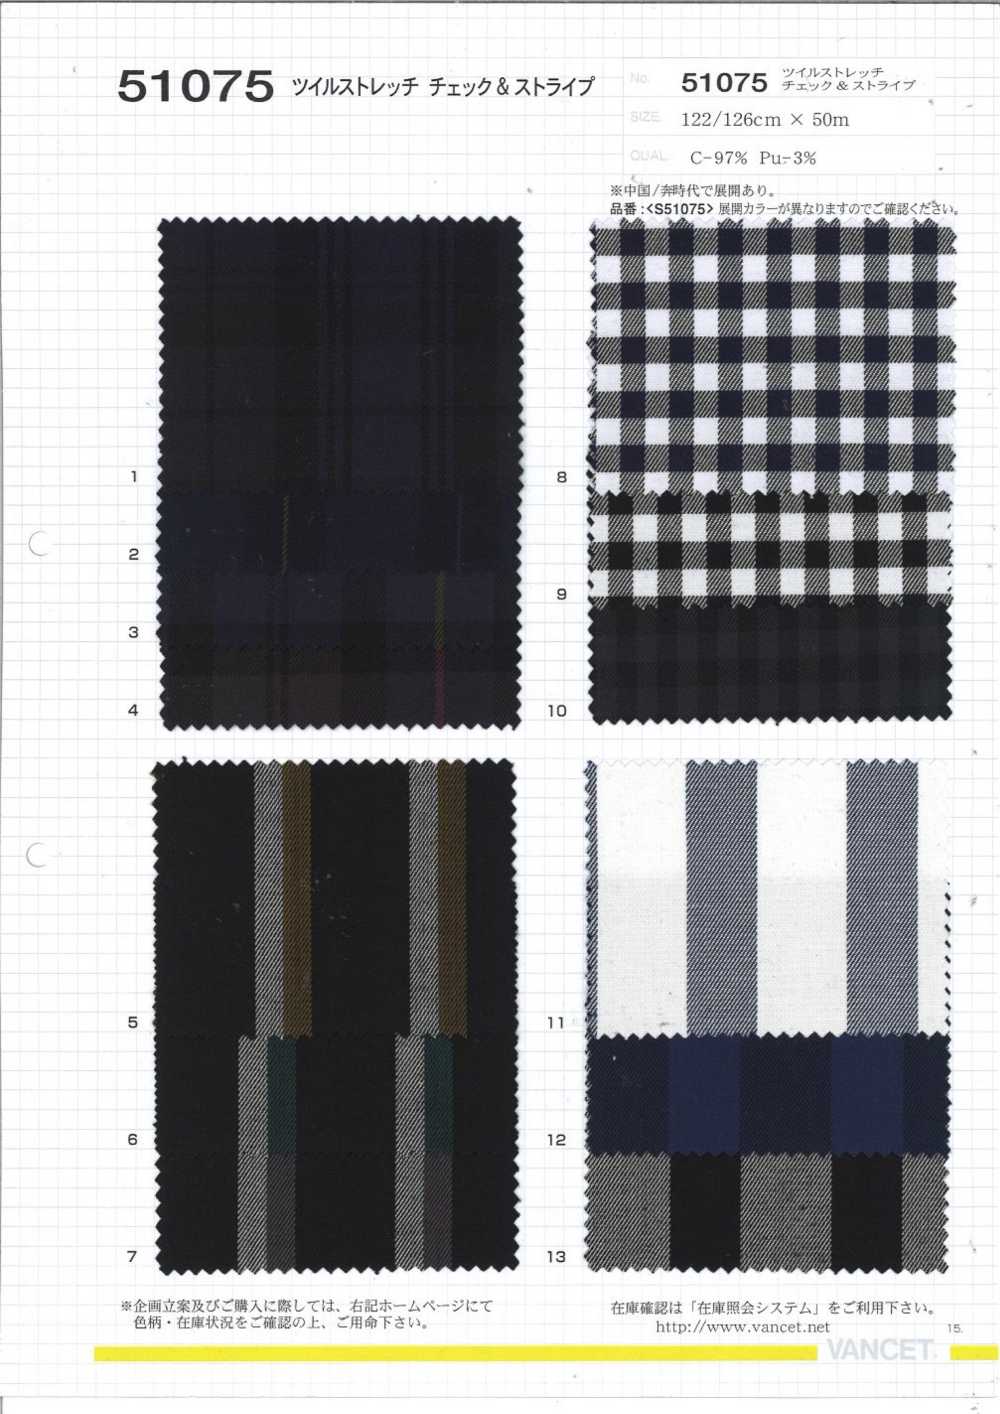 51075 Cuadros Y Rayas Elásticos De Sarga[Fabrica Textil] VANCET